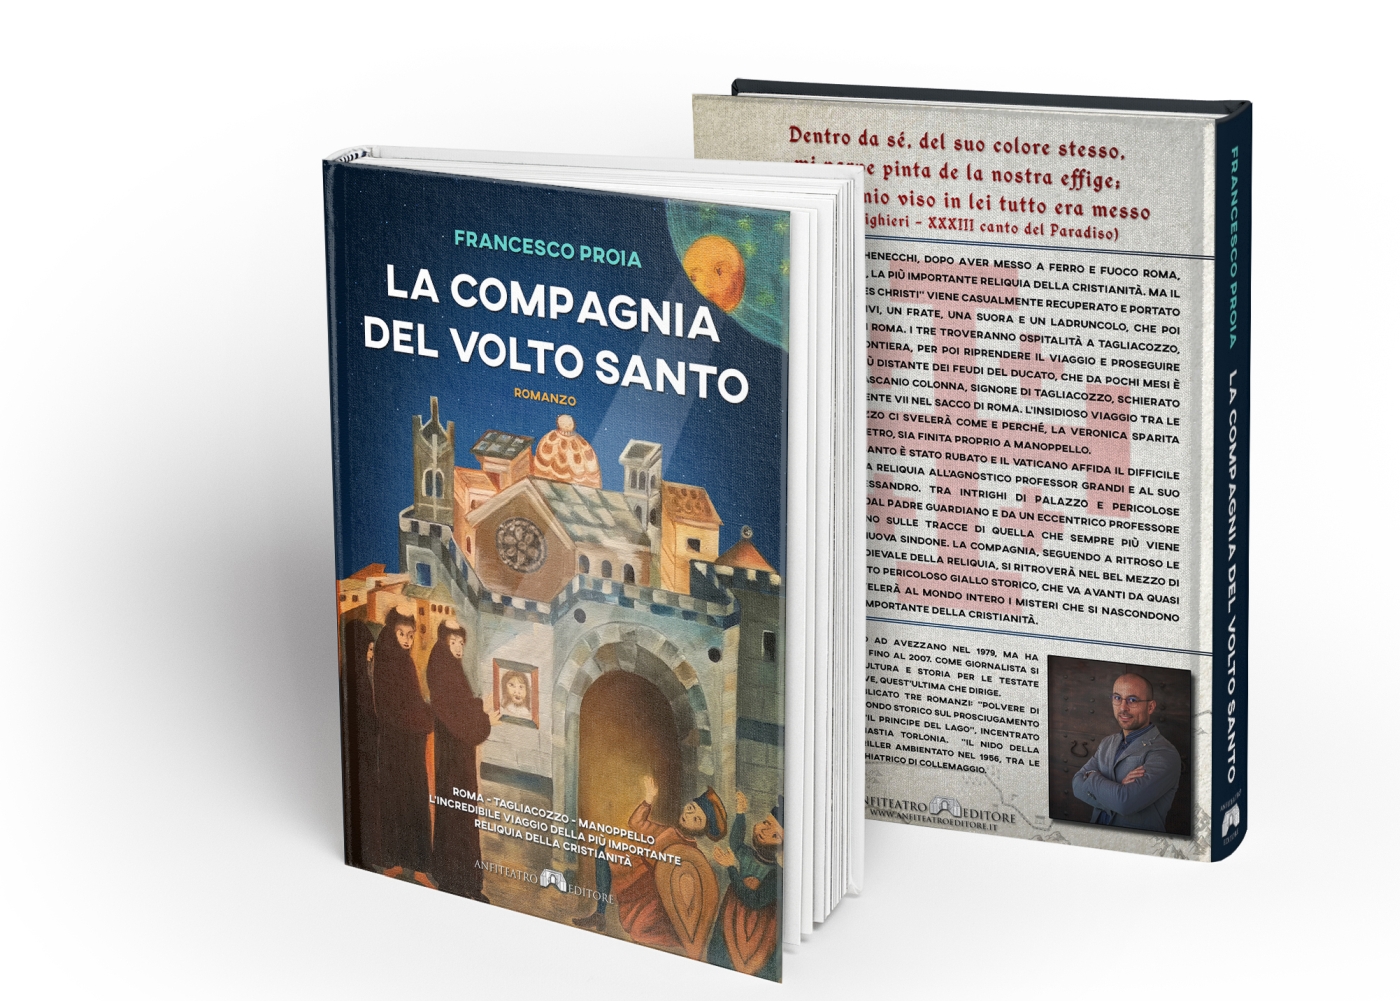 Presentazione dell'ultimo libro dello scrittore e giornalista Francesco Proia a Manoppello